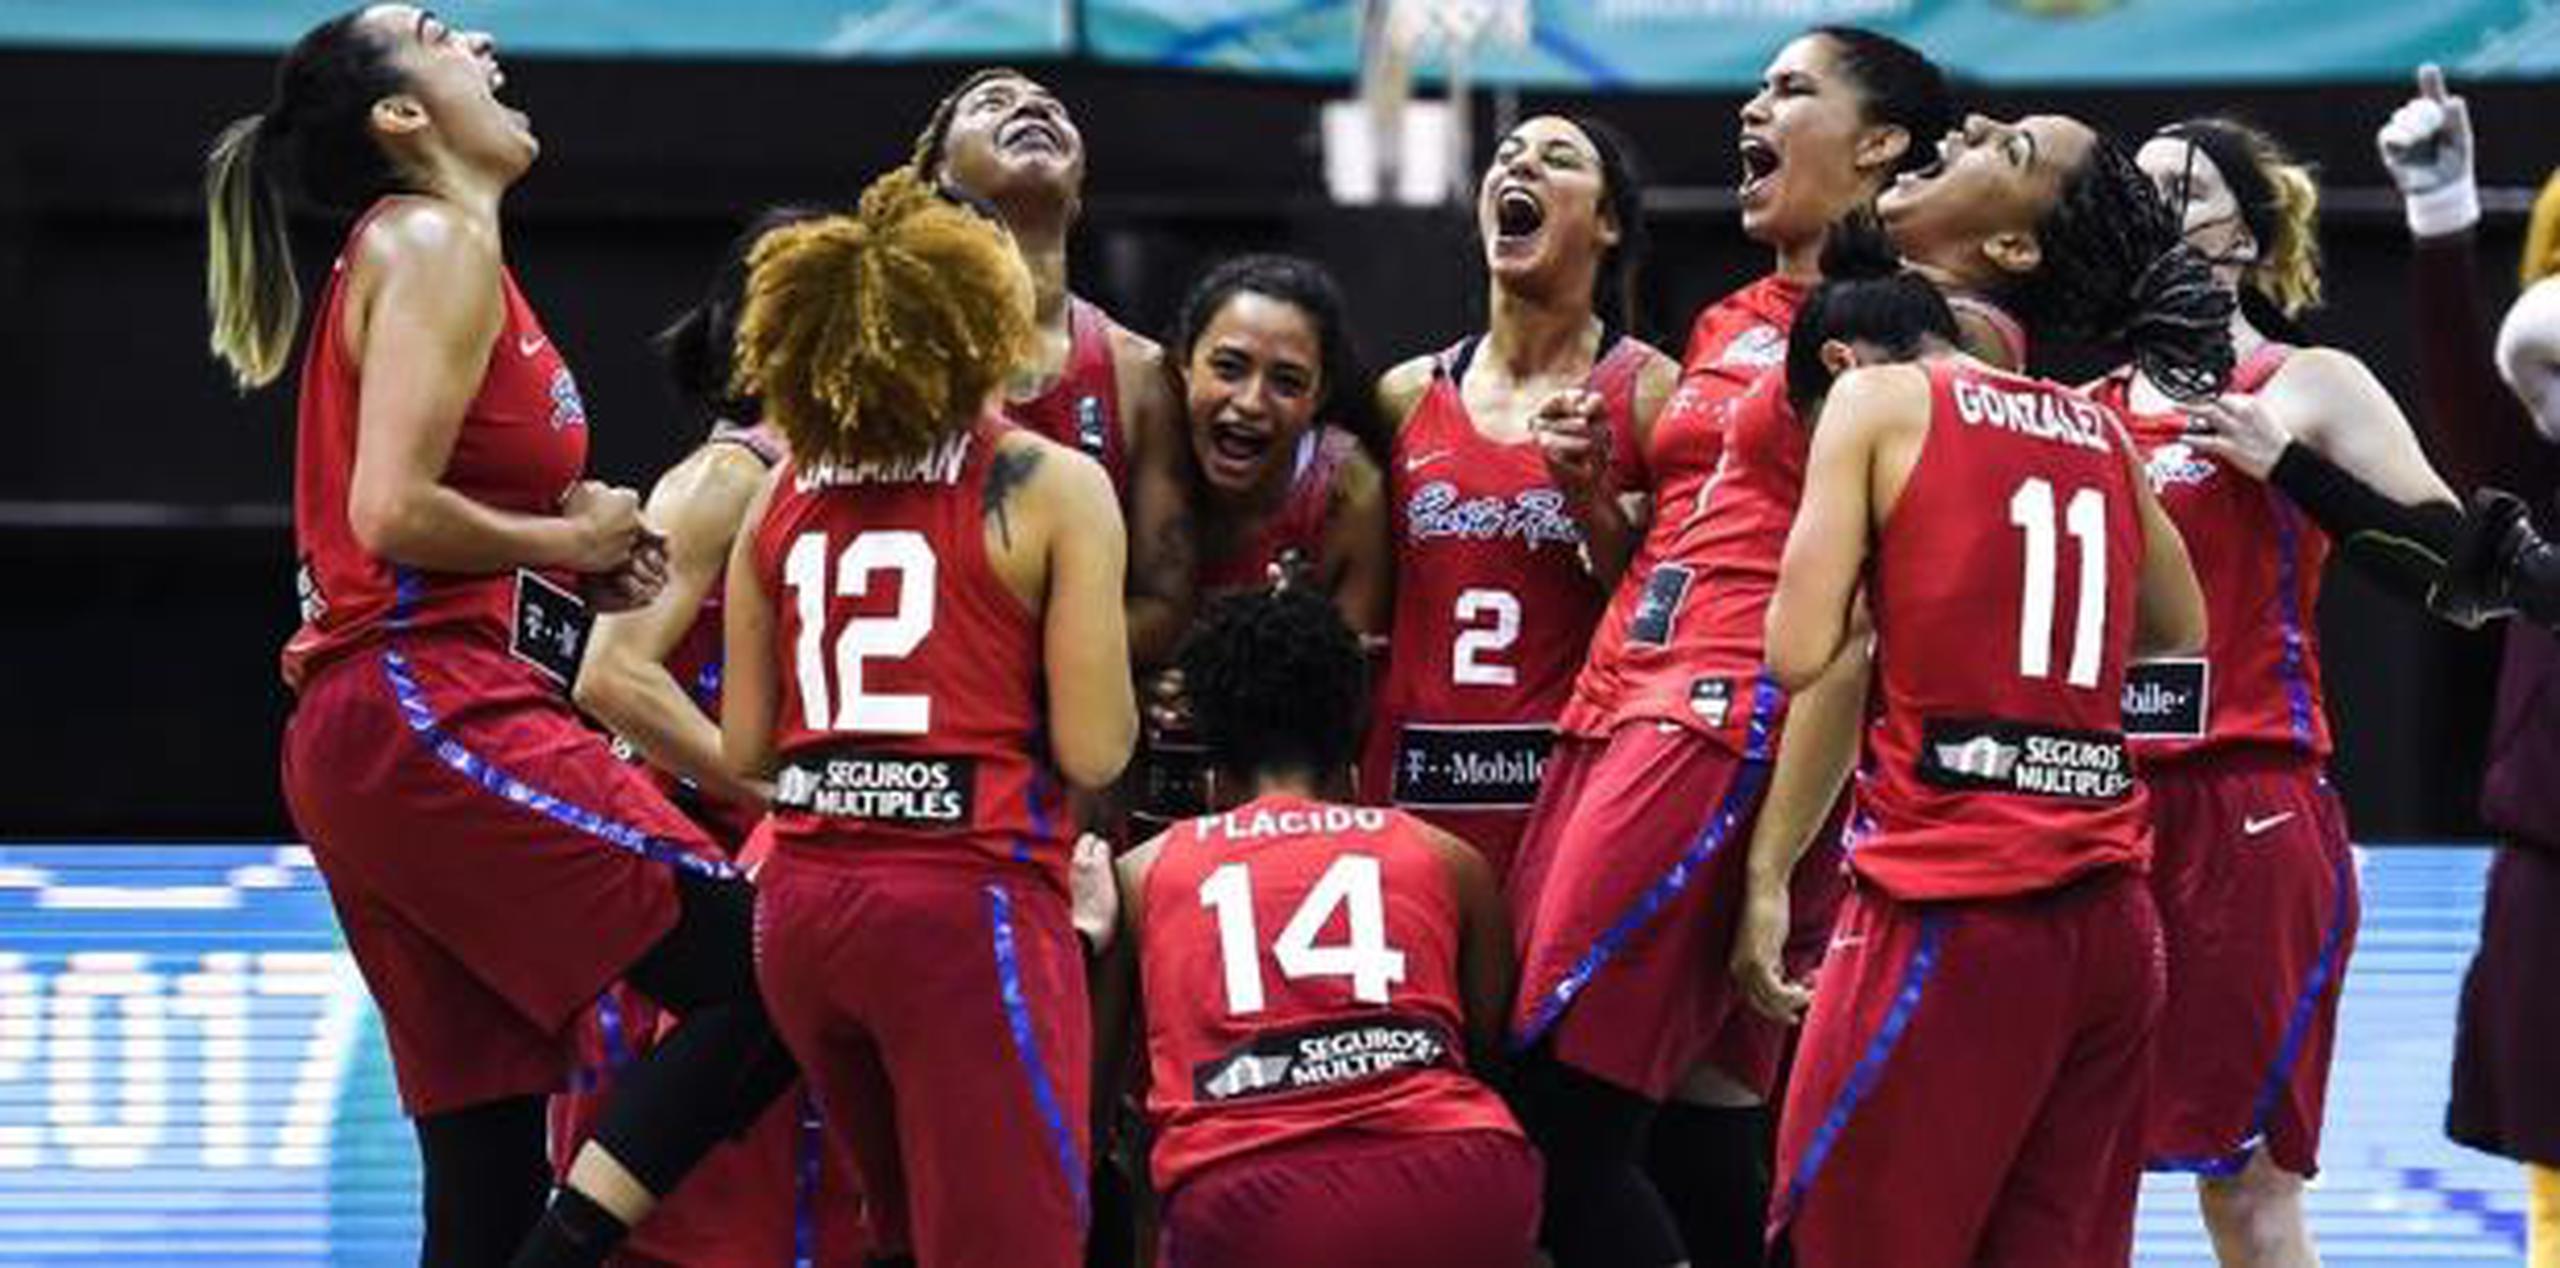 Puerto Rico ganó bronce en el pasado Americup, derrotando en ese juego a Brasil. (FIBA / Archivo)